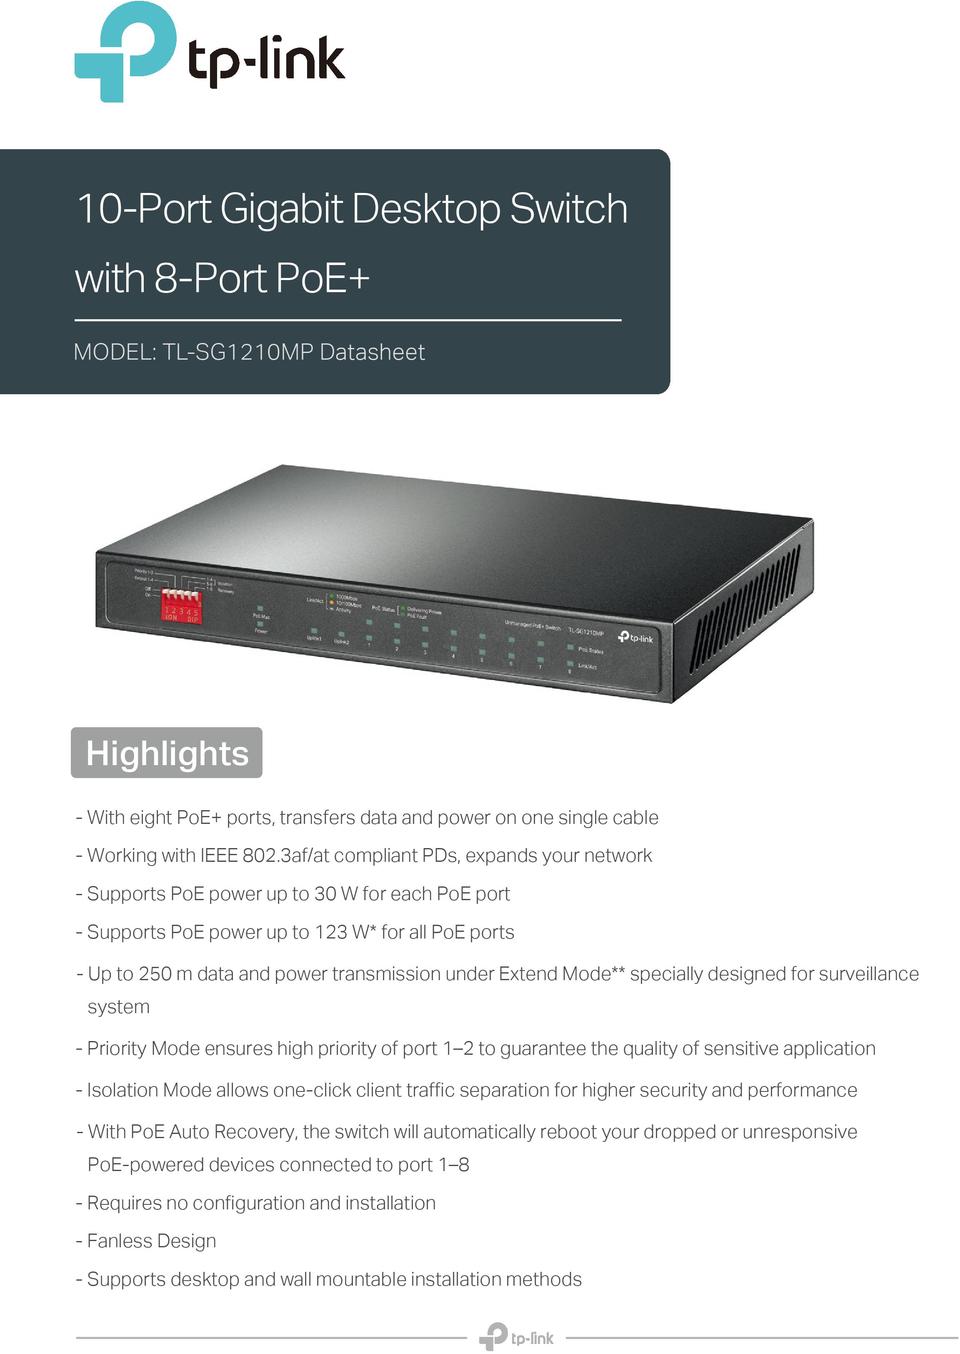 10 Port TP-Link TL-SG1210MP Gigabit Desktop Switch with PoE+ 0